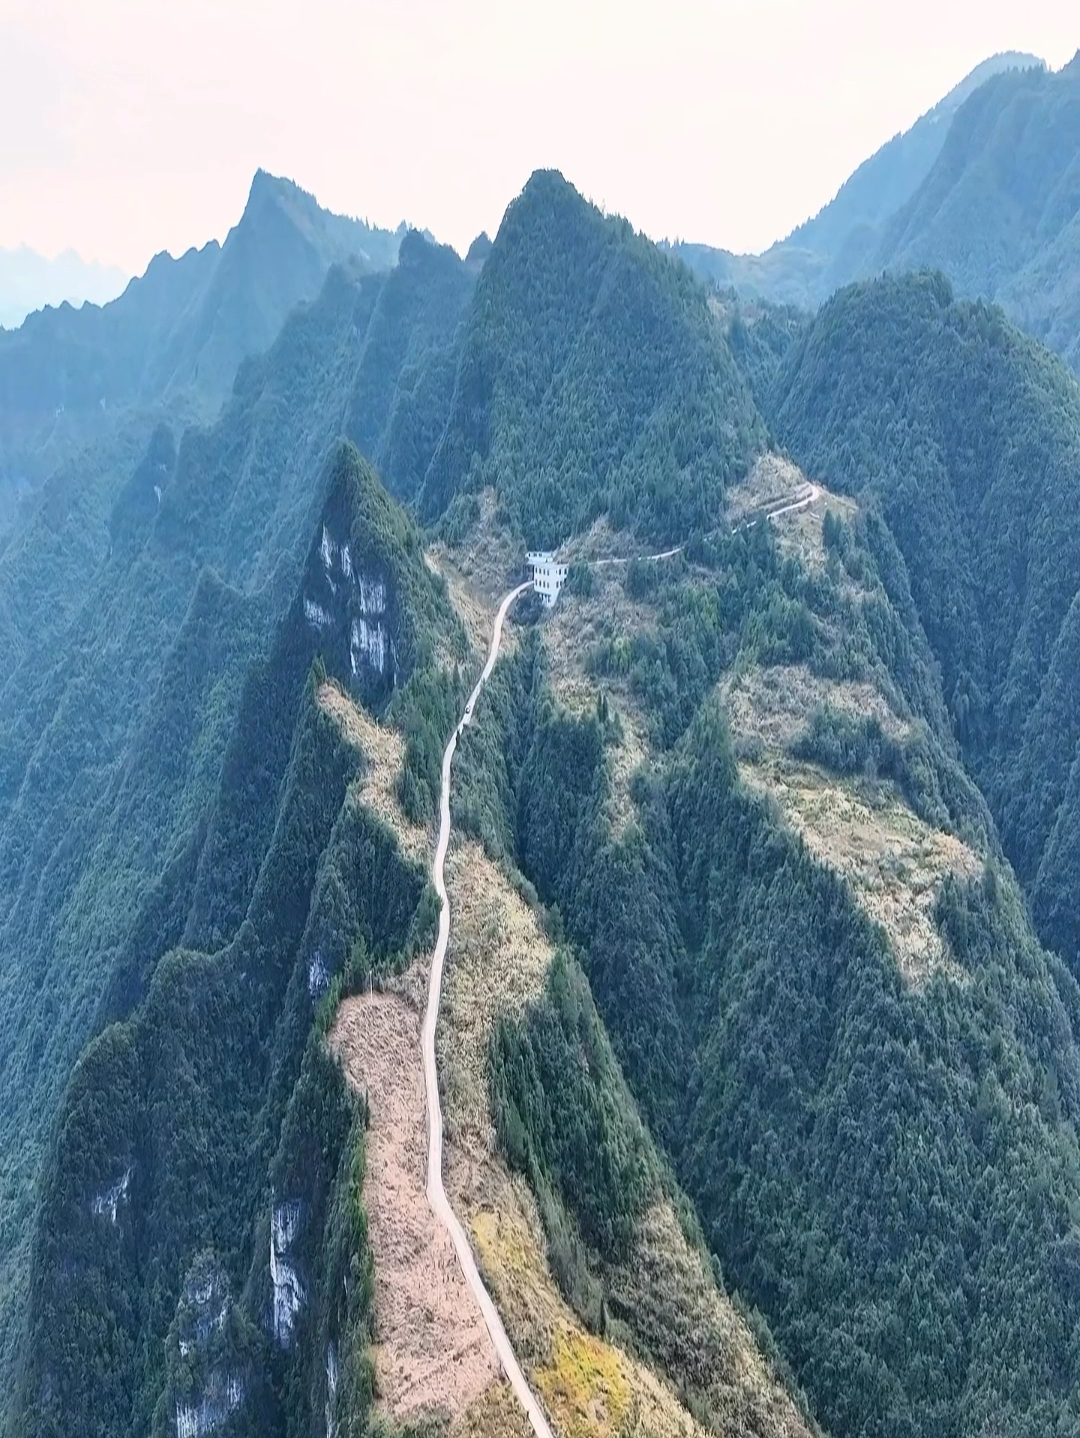 这是贵州版的天路，修建在群山之颠，外地老司机见了都两腿发软。#贵州 #盘山公路 #山路十八弯 #旅行